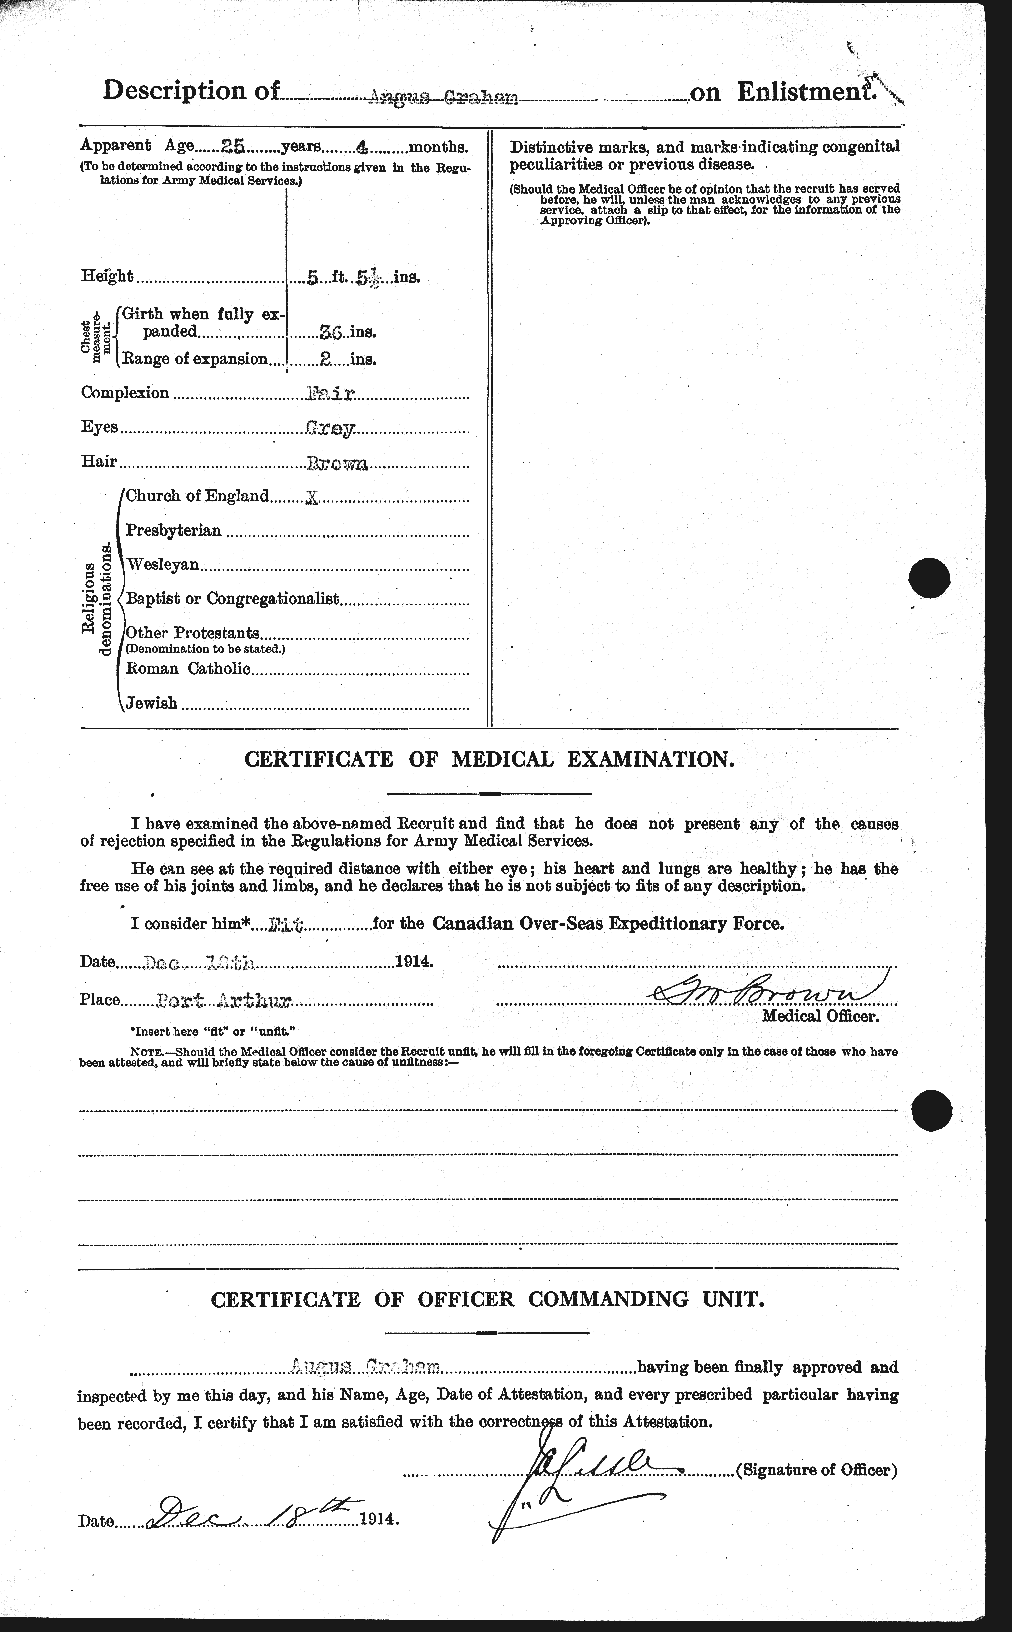 Dossiers du Personnel de la Première Guerre mondiale - CEC 359620b